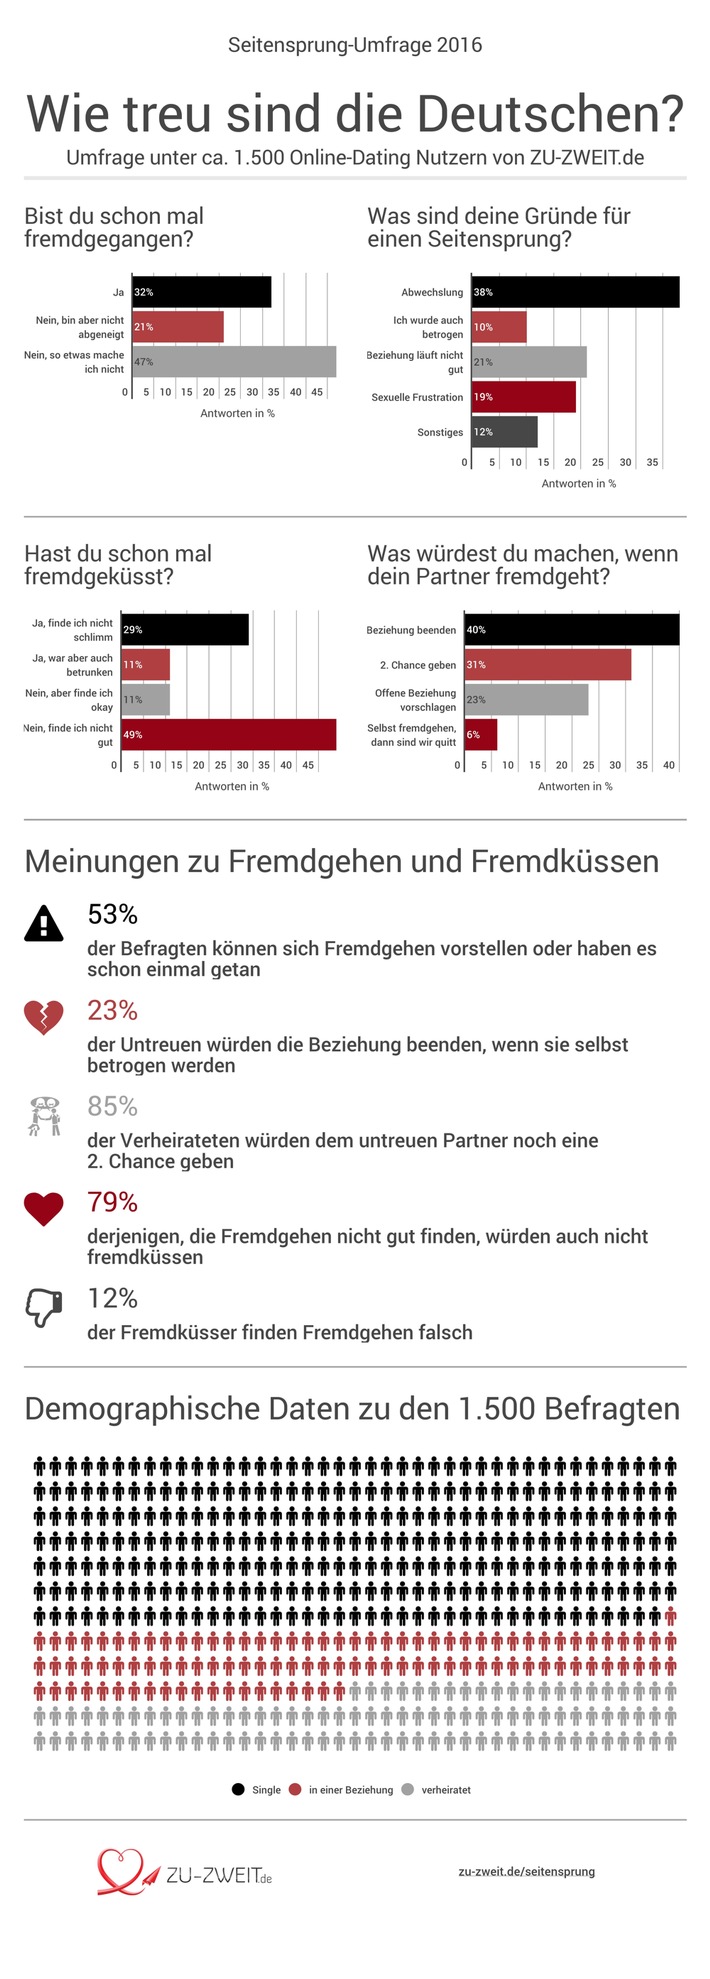 Repräsentative Umfrage zeigt: Über 32% der Deutschen betrügen ihren Partner